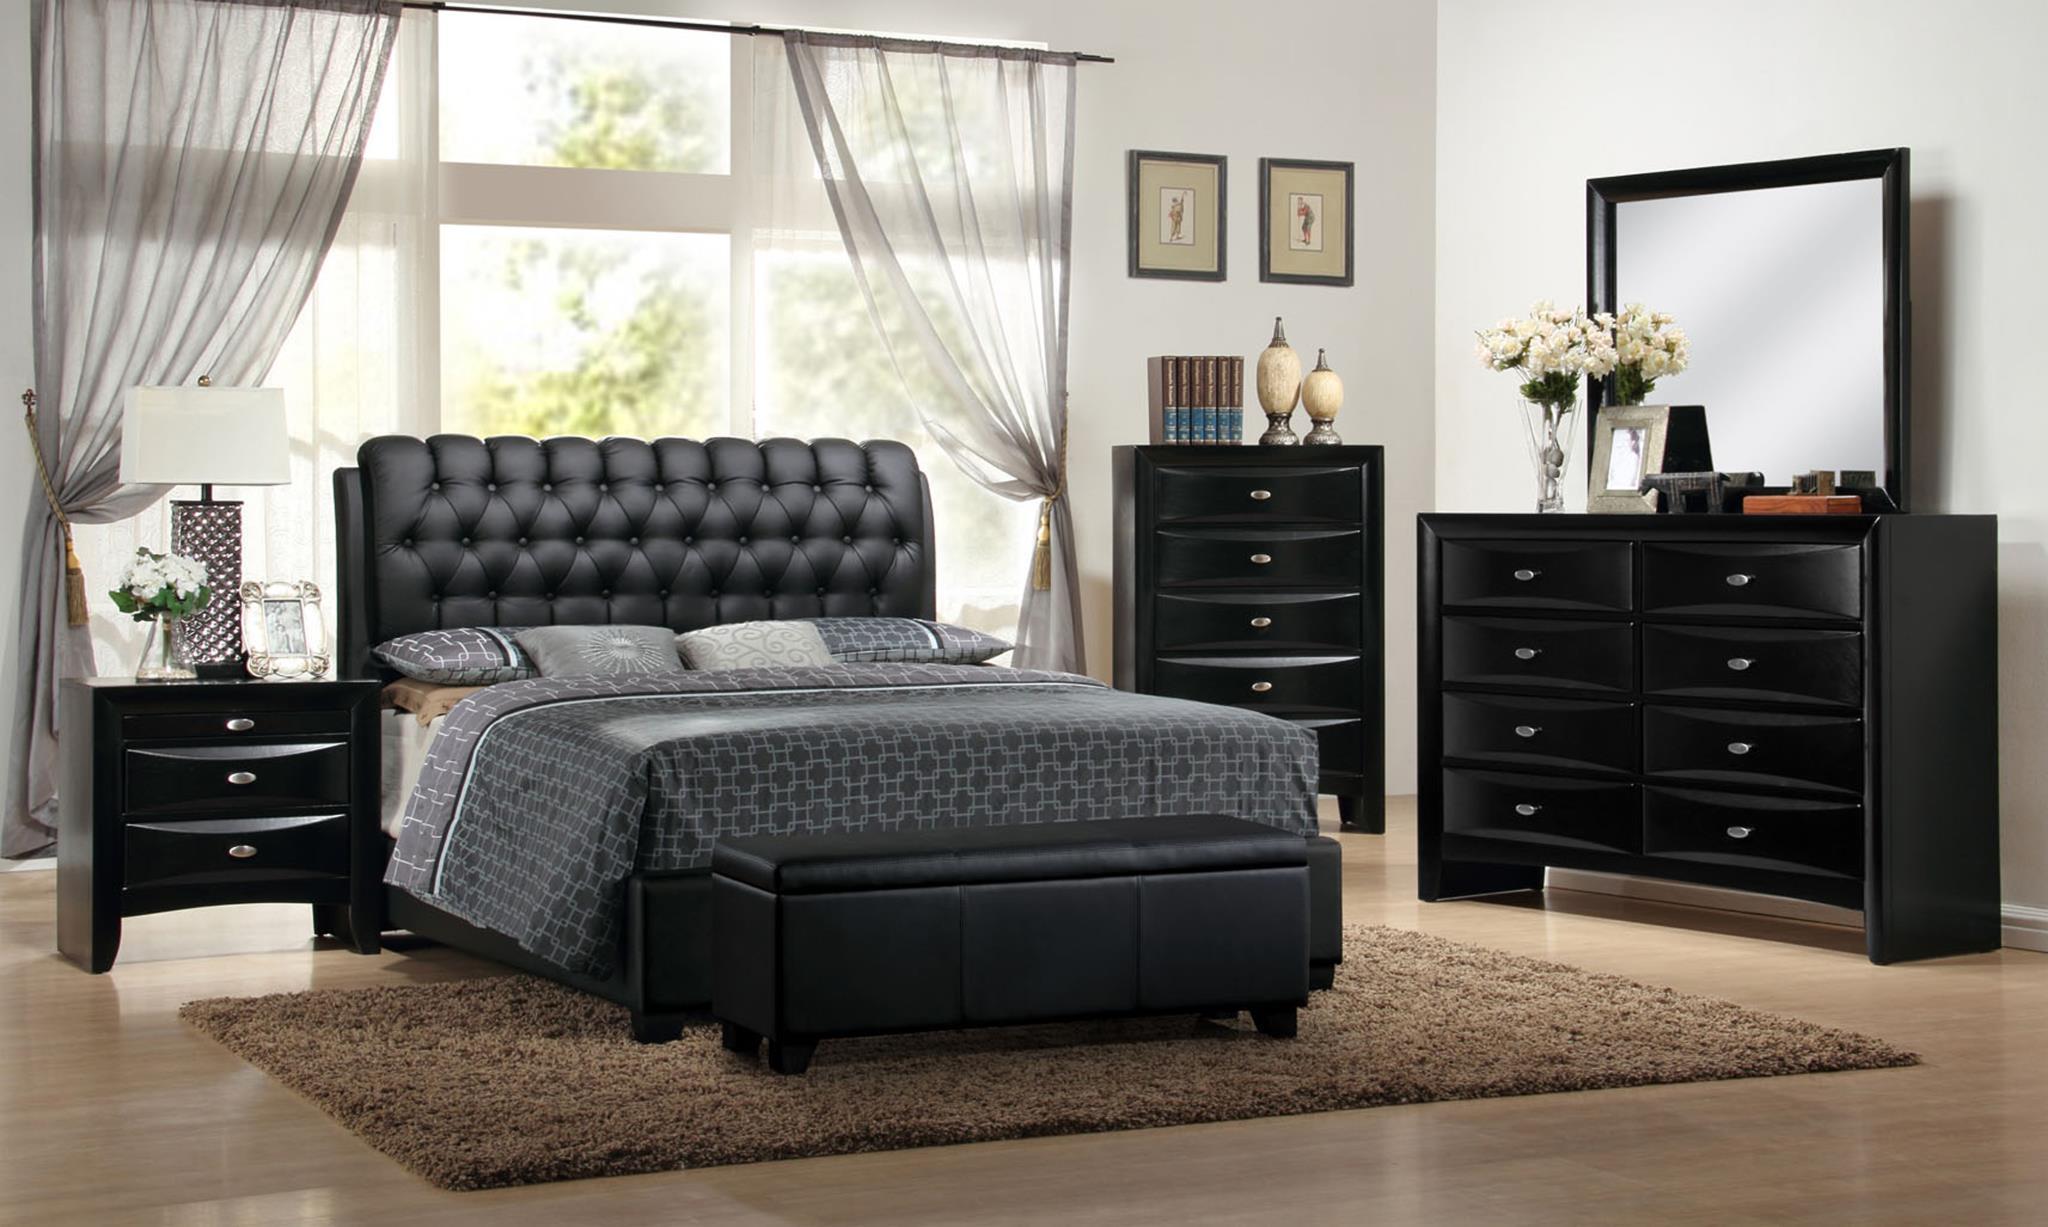 

    
MYCO Furniture 2955Q-BK Barnes Black Eco Leather Queen Bedroom Set 6Pcs
